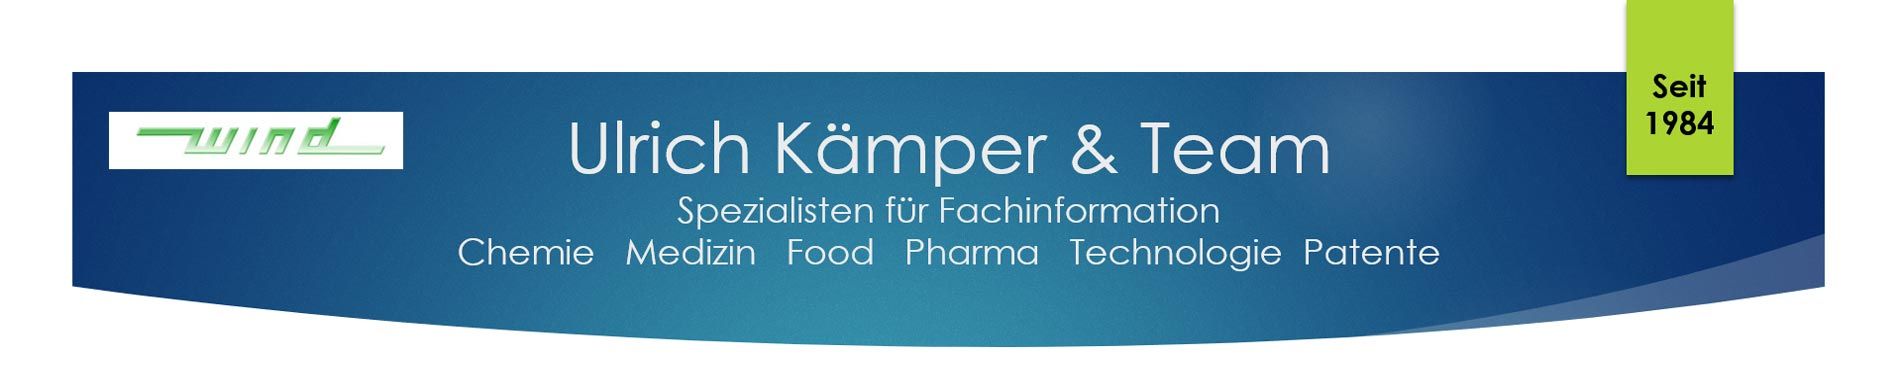 Ulrich Kämper & Team